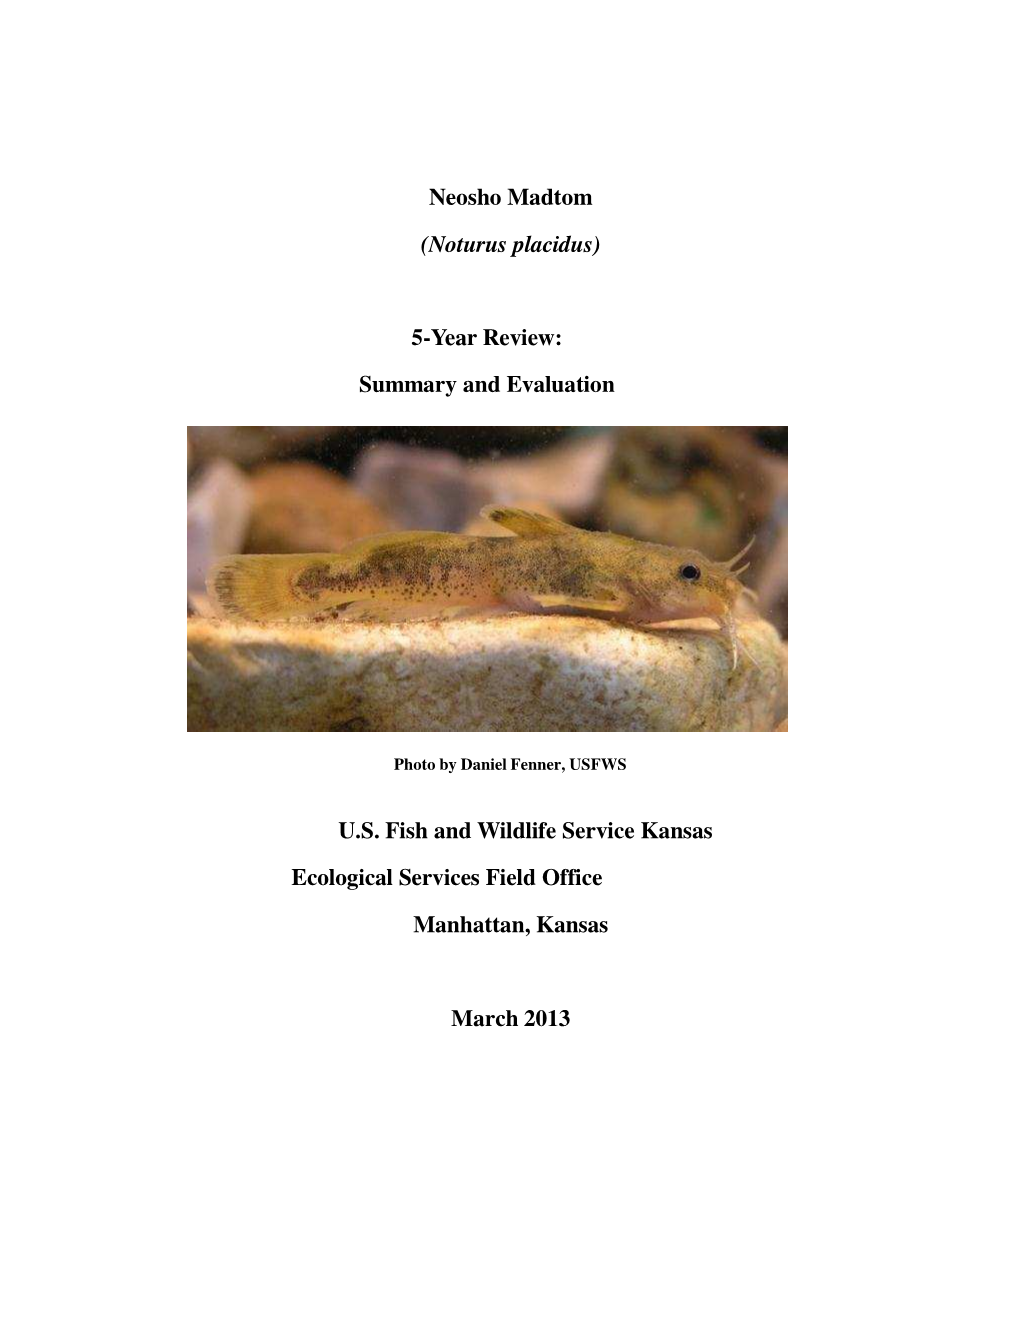 Neosho Madtom (Noturus Placidus) 5-Year Review